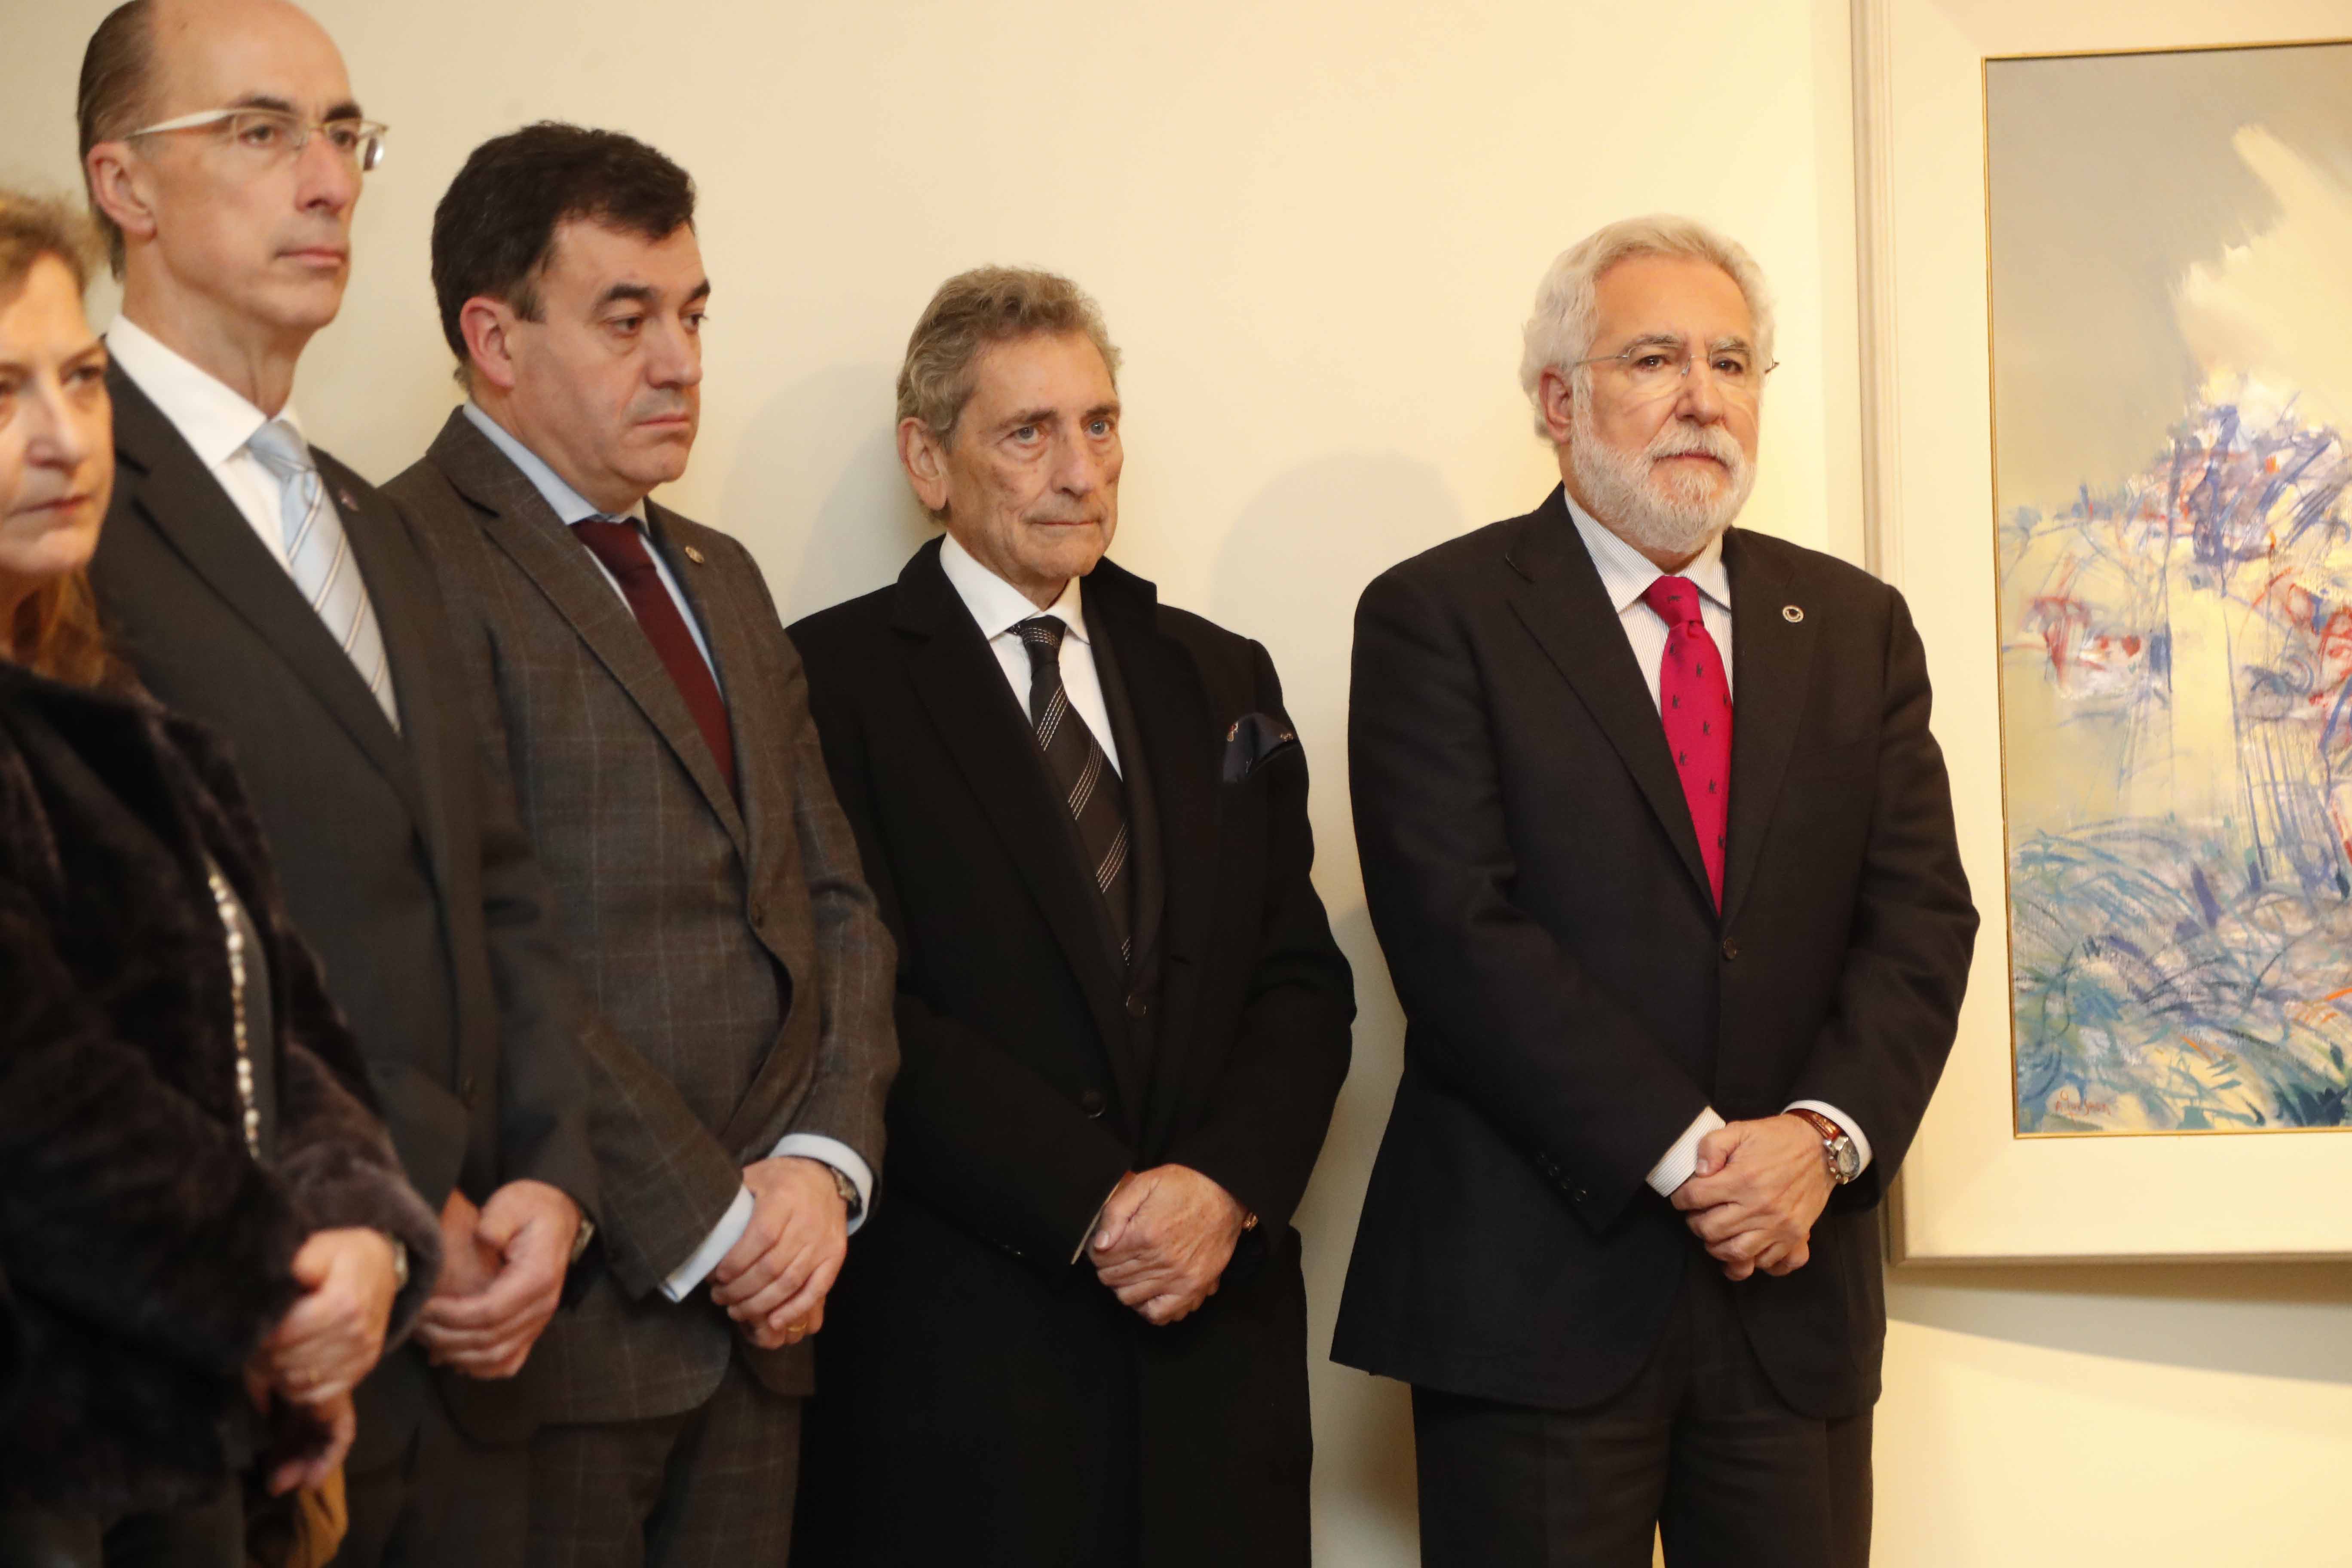 O presidente do Parlamento de Galicia, Miguel Ángel Santalices, asistiu á inauguración da exposición “Antonio Quesada. Dende o sentimento” no Teatro Afundación en Vigo.